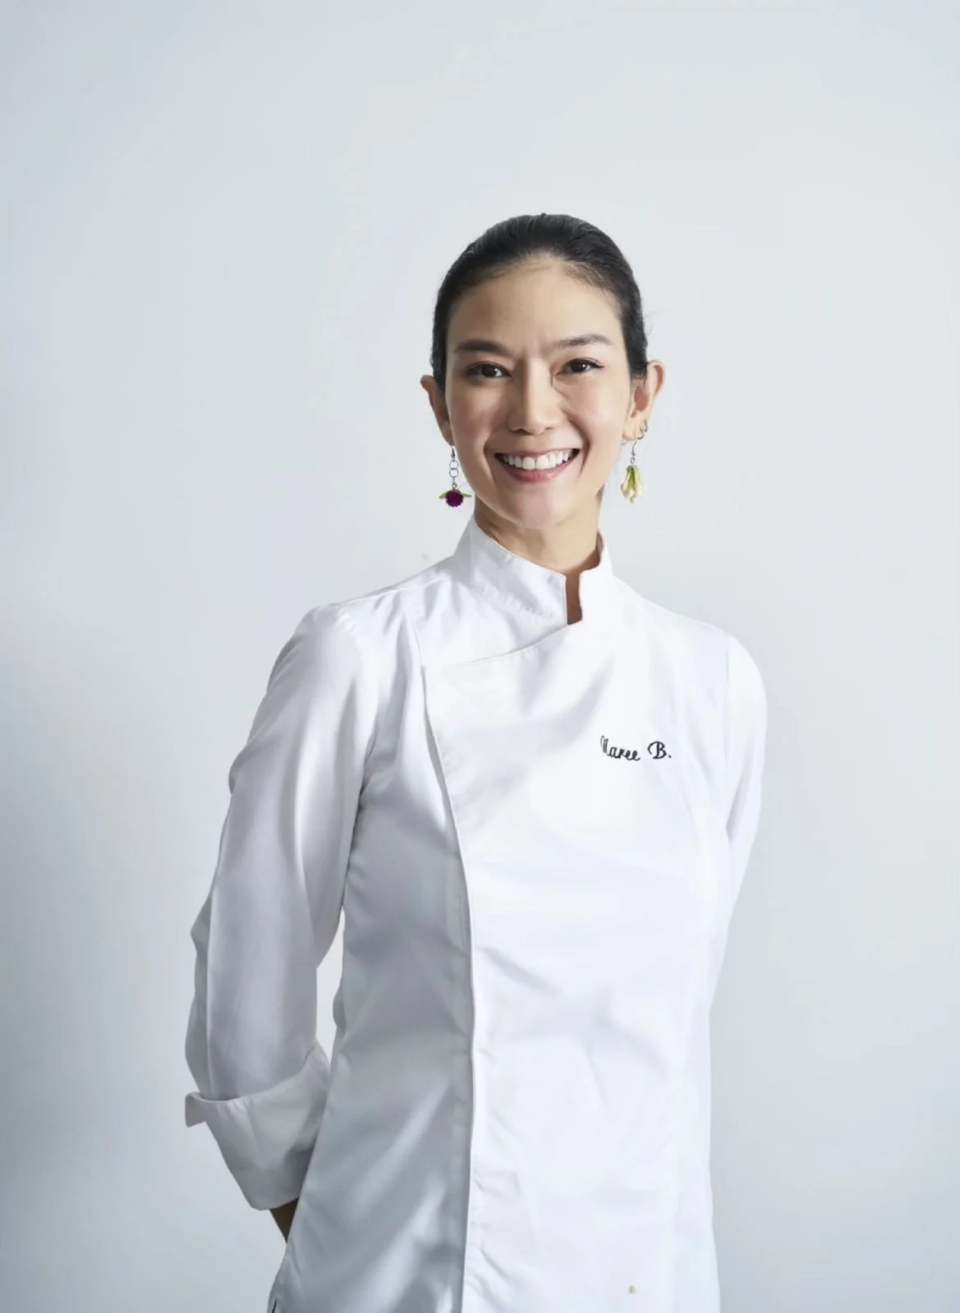 以上 台北萬豪酒店邀請被泰國時尚雜誌譽為「值得關注的泰國頂尖女廚師」之一的泰國美女私廚Naree Boonyakiat首次登台客座。（Photo:台北萬豪酒店）